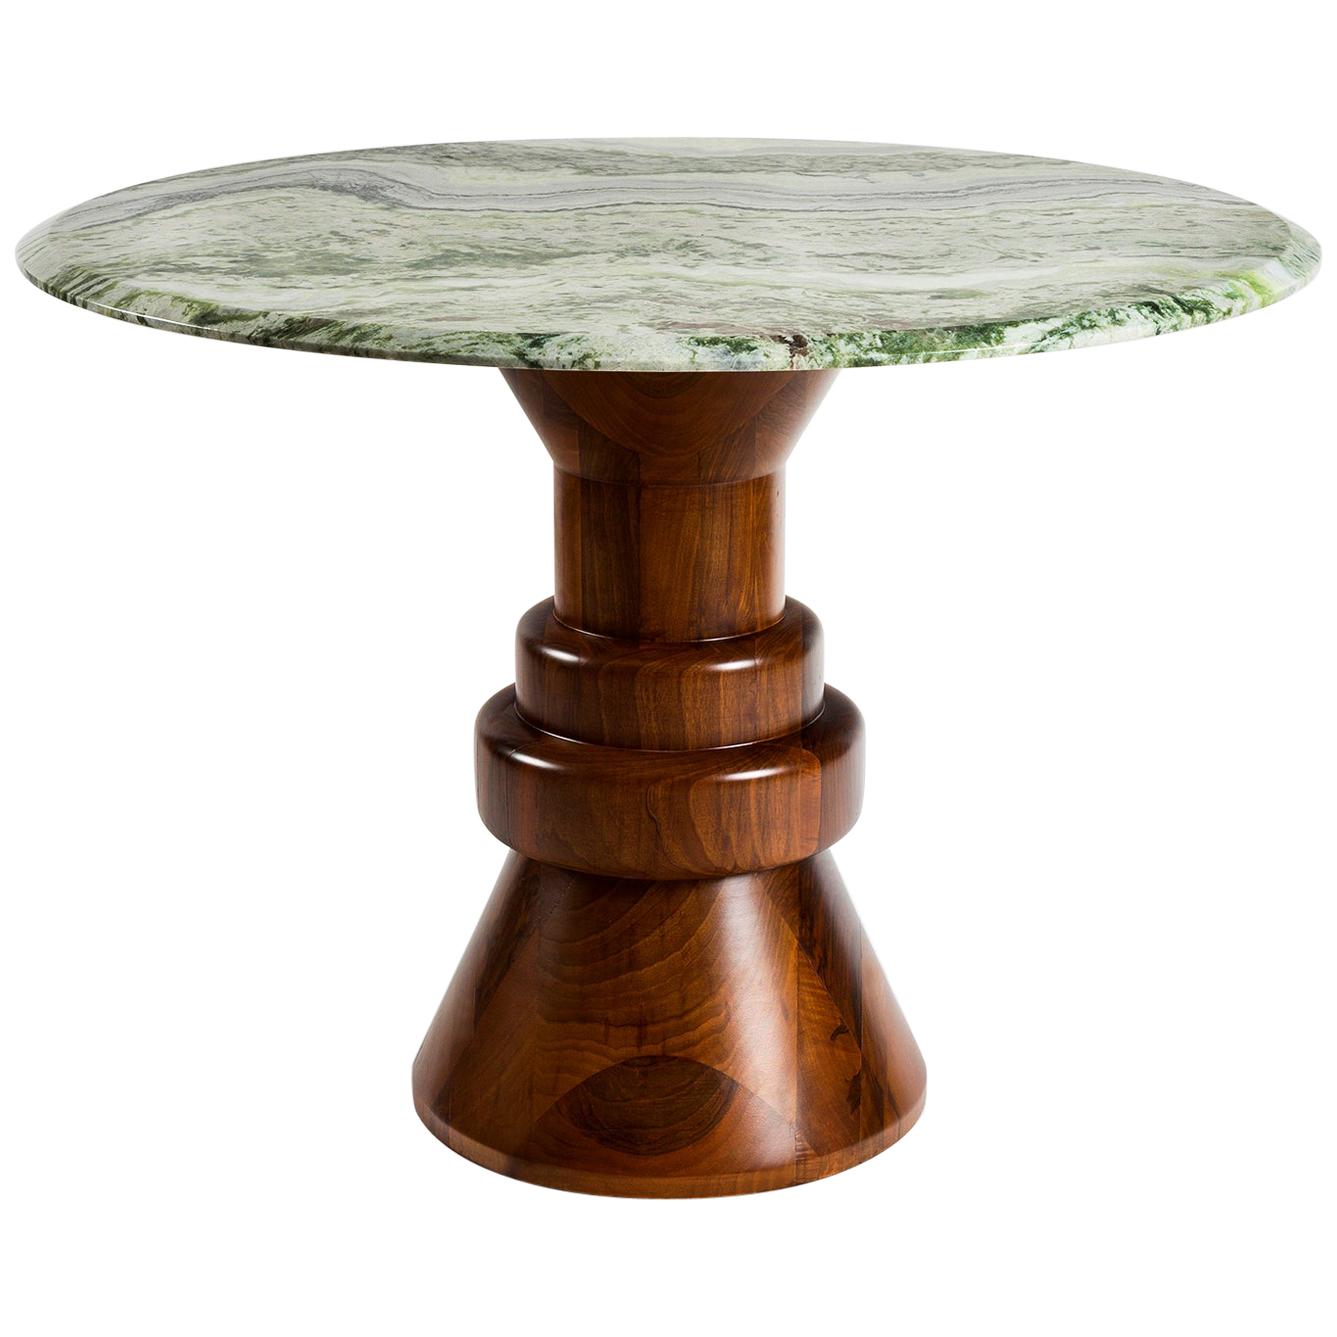 Cette table à manger ludique fabriquée à la main est parfaite pour accueillir 4 personnes dans les petits espaces. Le plateau en marbre crème est combiné à une base en bois sculpturale et peut être personnalisé dans différentes tailles et plateaux